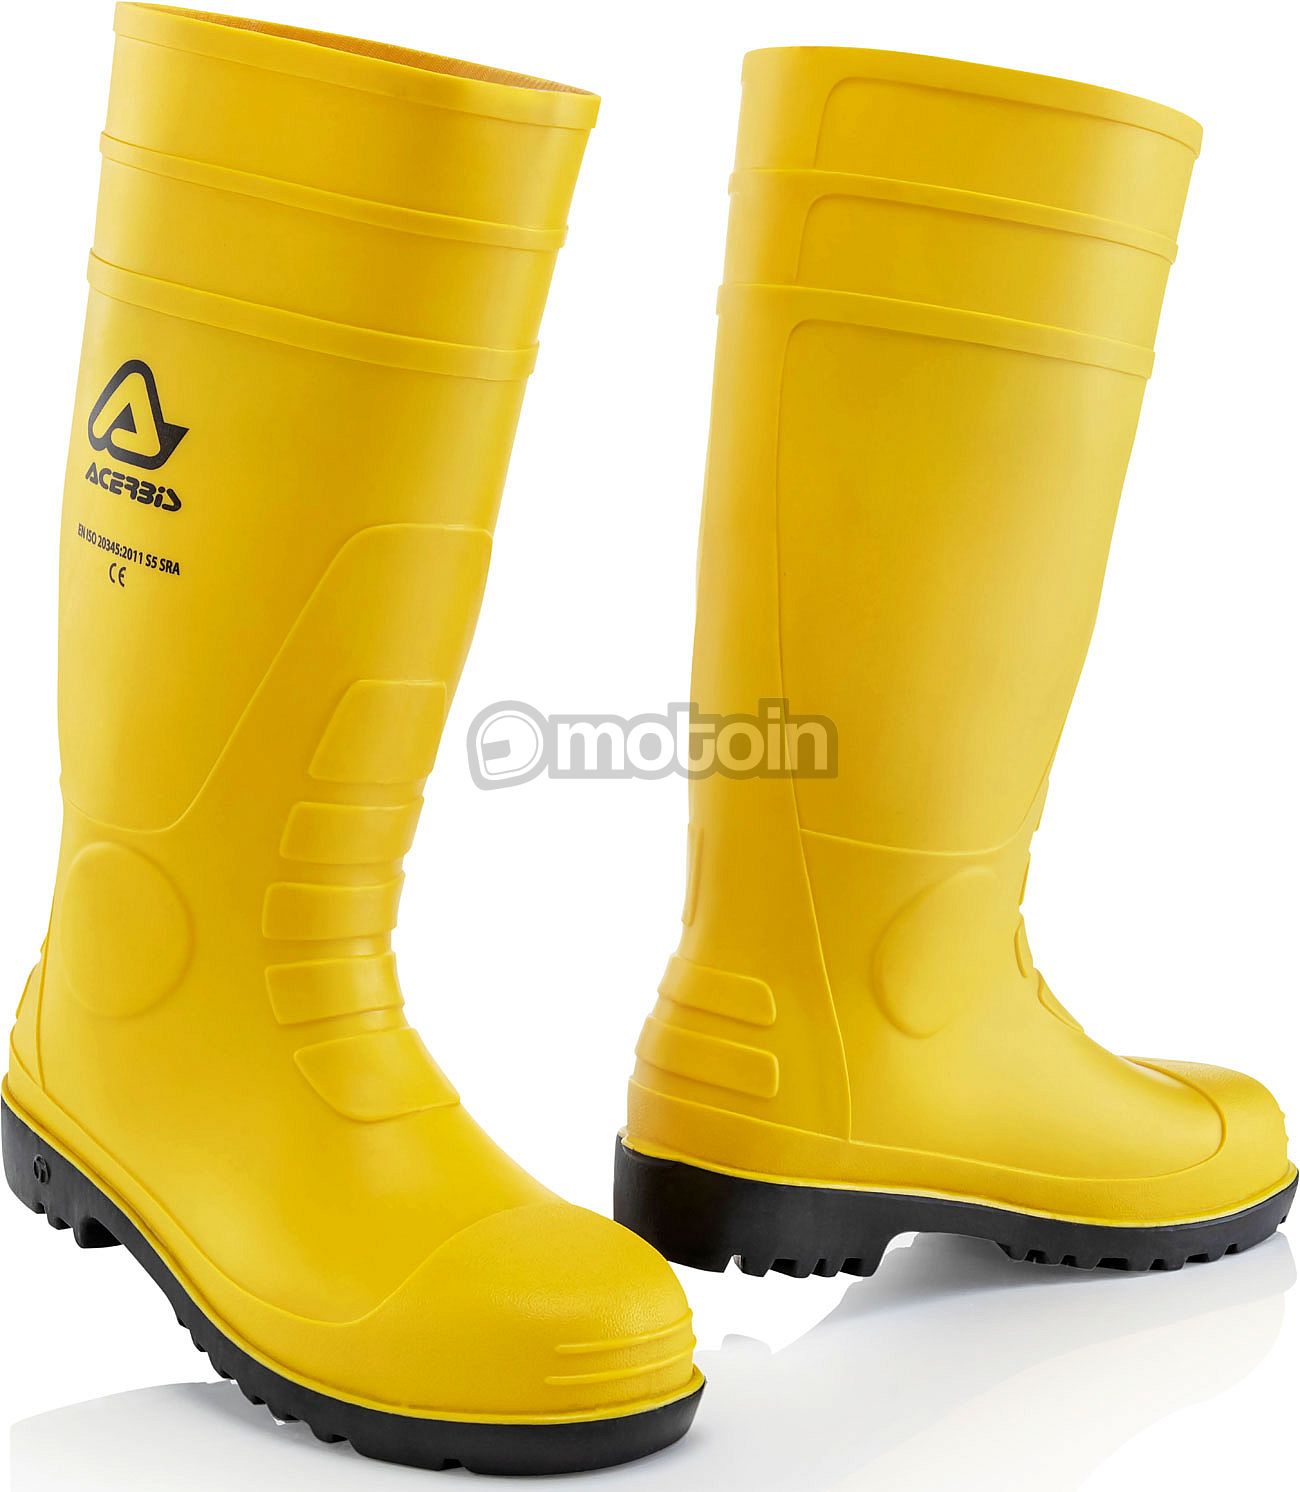 Acerbis 00Set, rubber boots